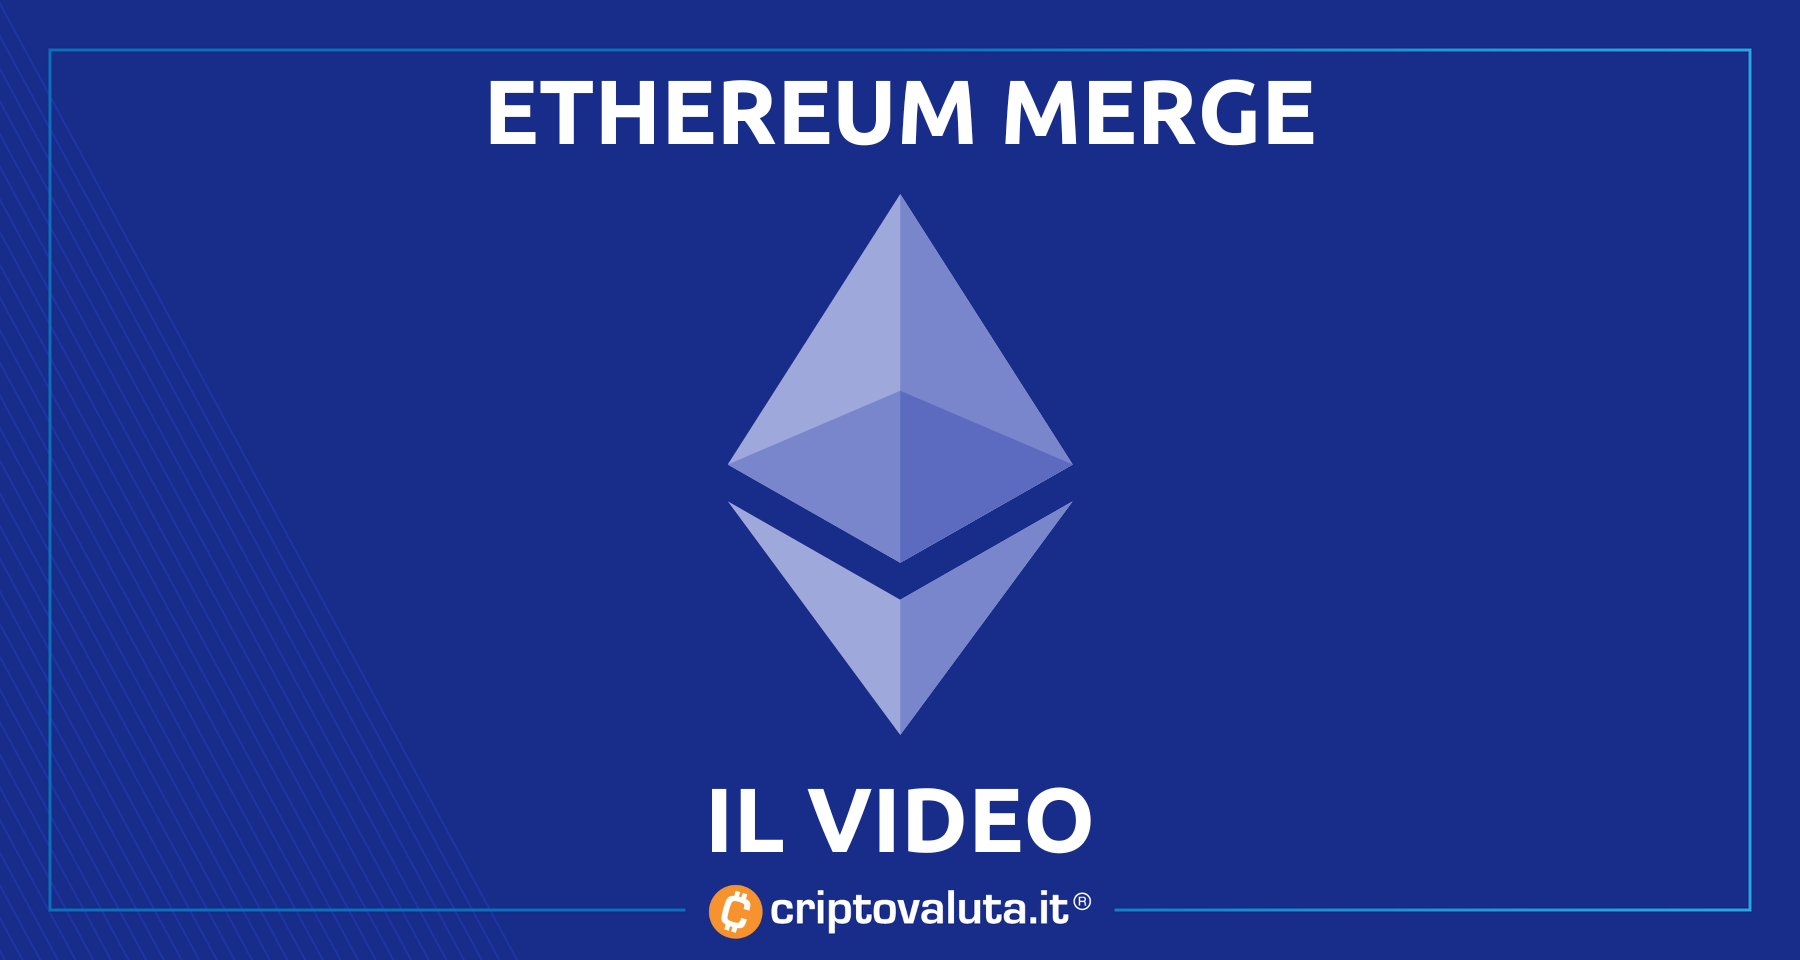 Ethereum: Il Merge spiegato a tutti! | La nostra crypto live con gli esperti [VIDEO]